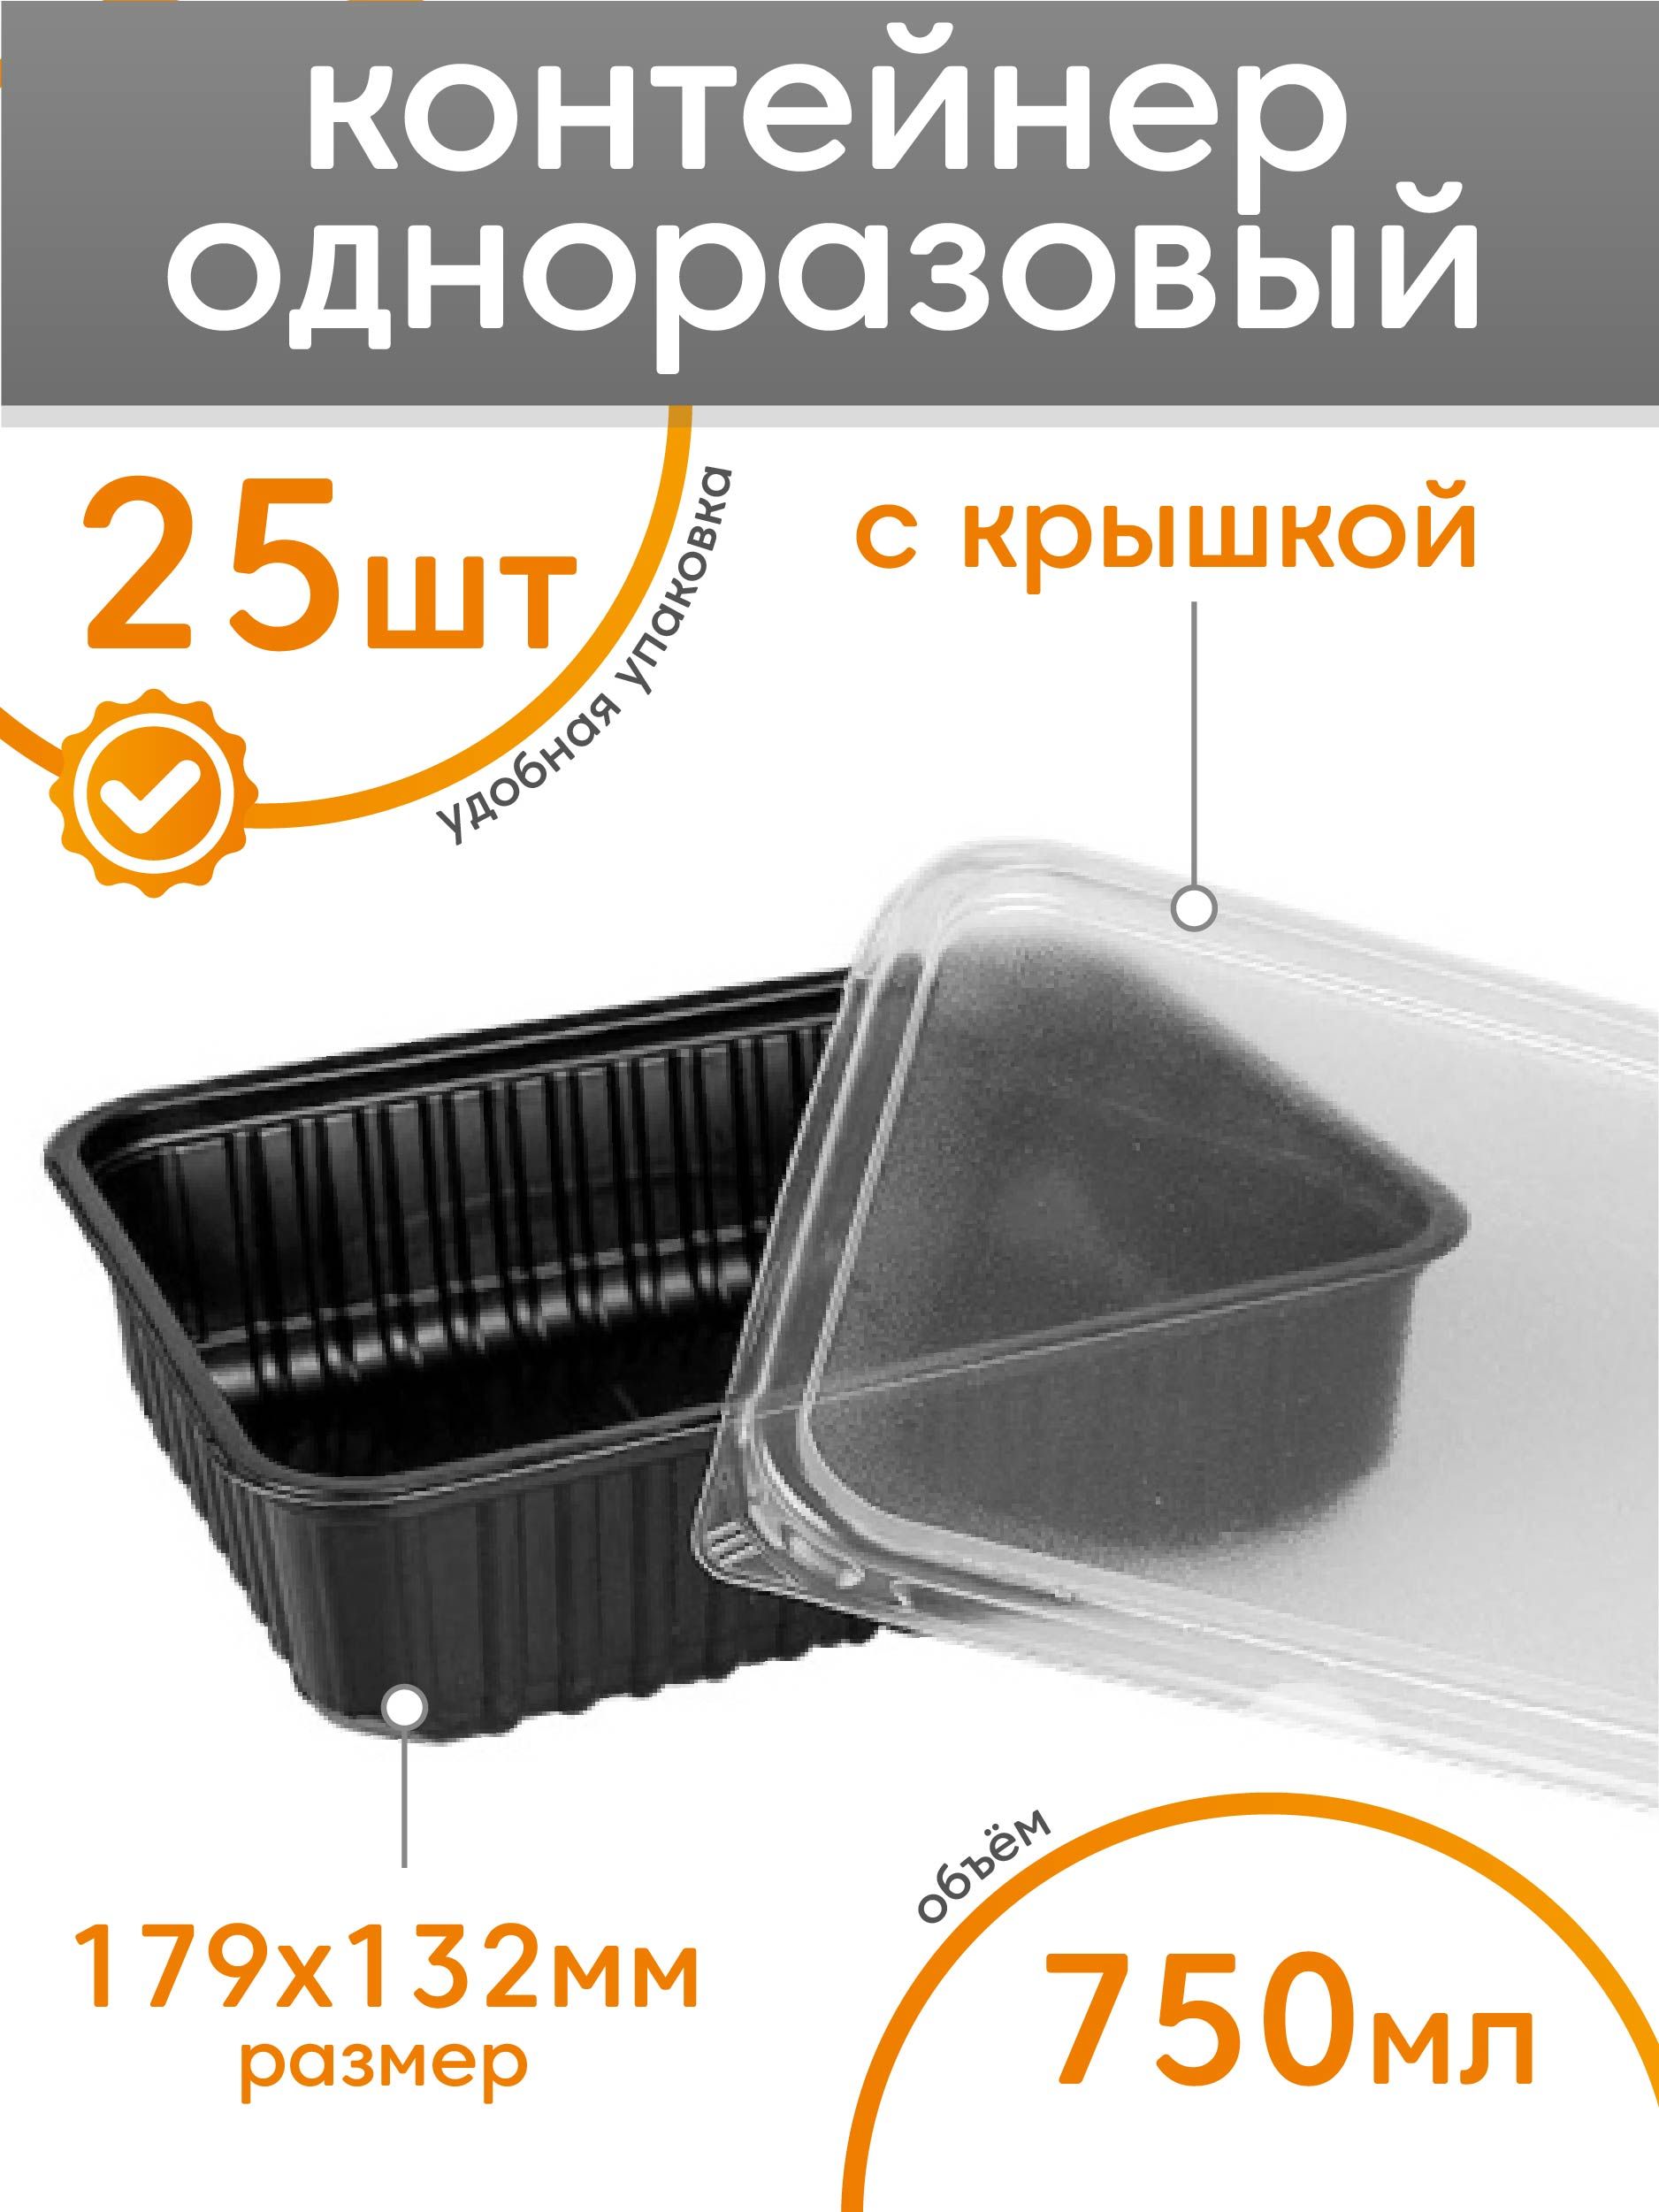 Пластиковые контейнеры для салатов